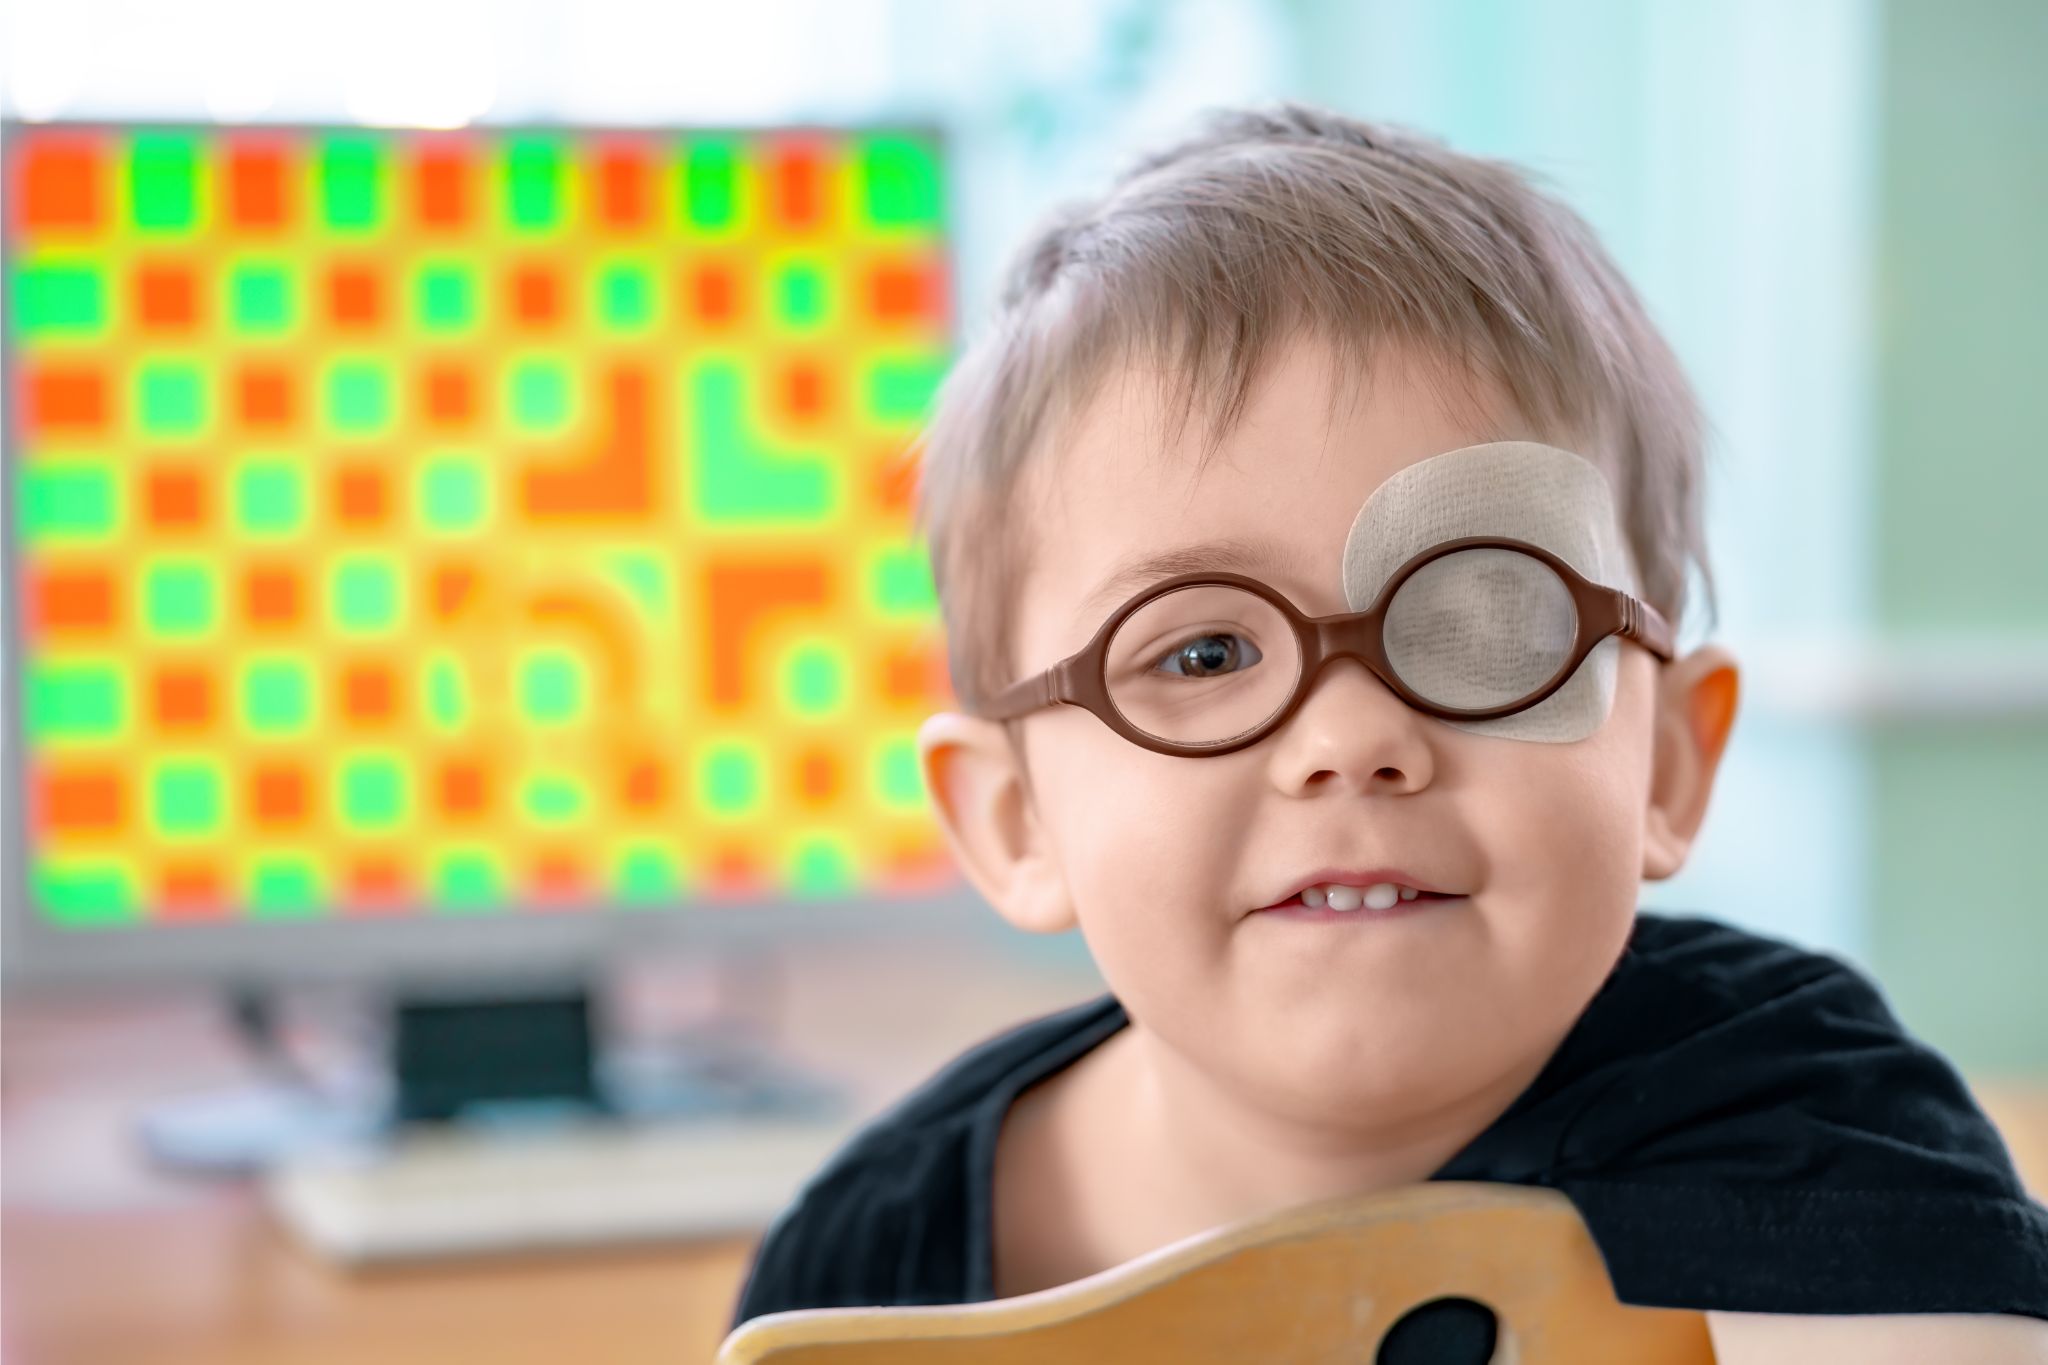 Um garotinho usando óculos e um tapa-olho.Ele passa por tratamento de visão para prevenir estrabismo (Exotropia Intermitente). Problema de doença de visão infantil.